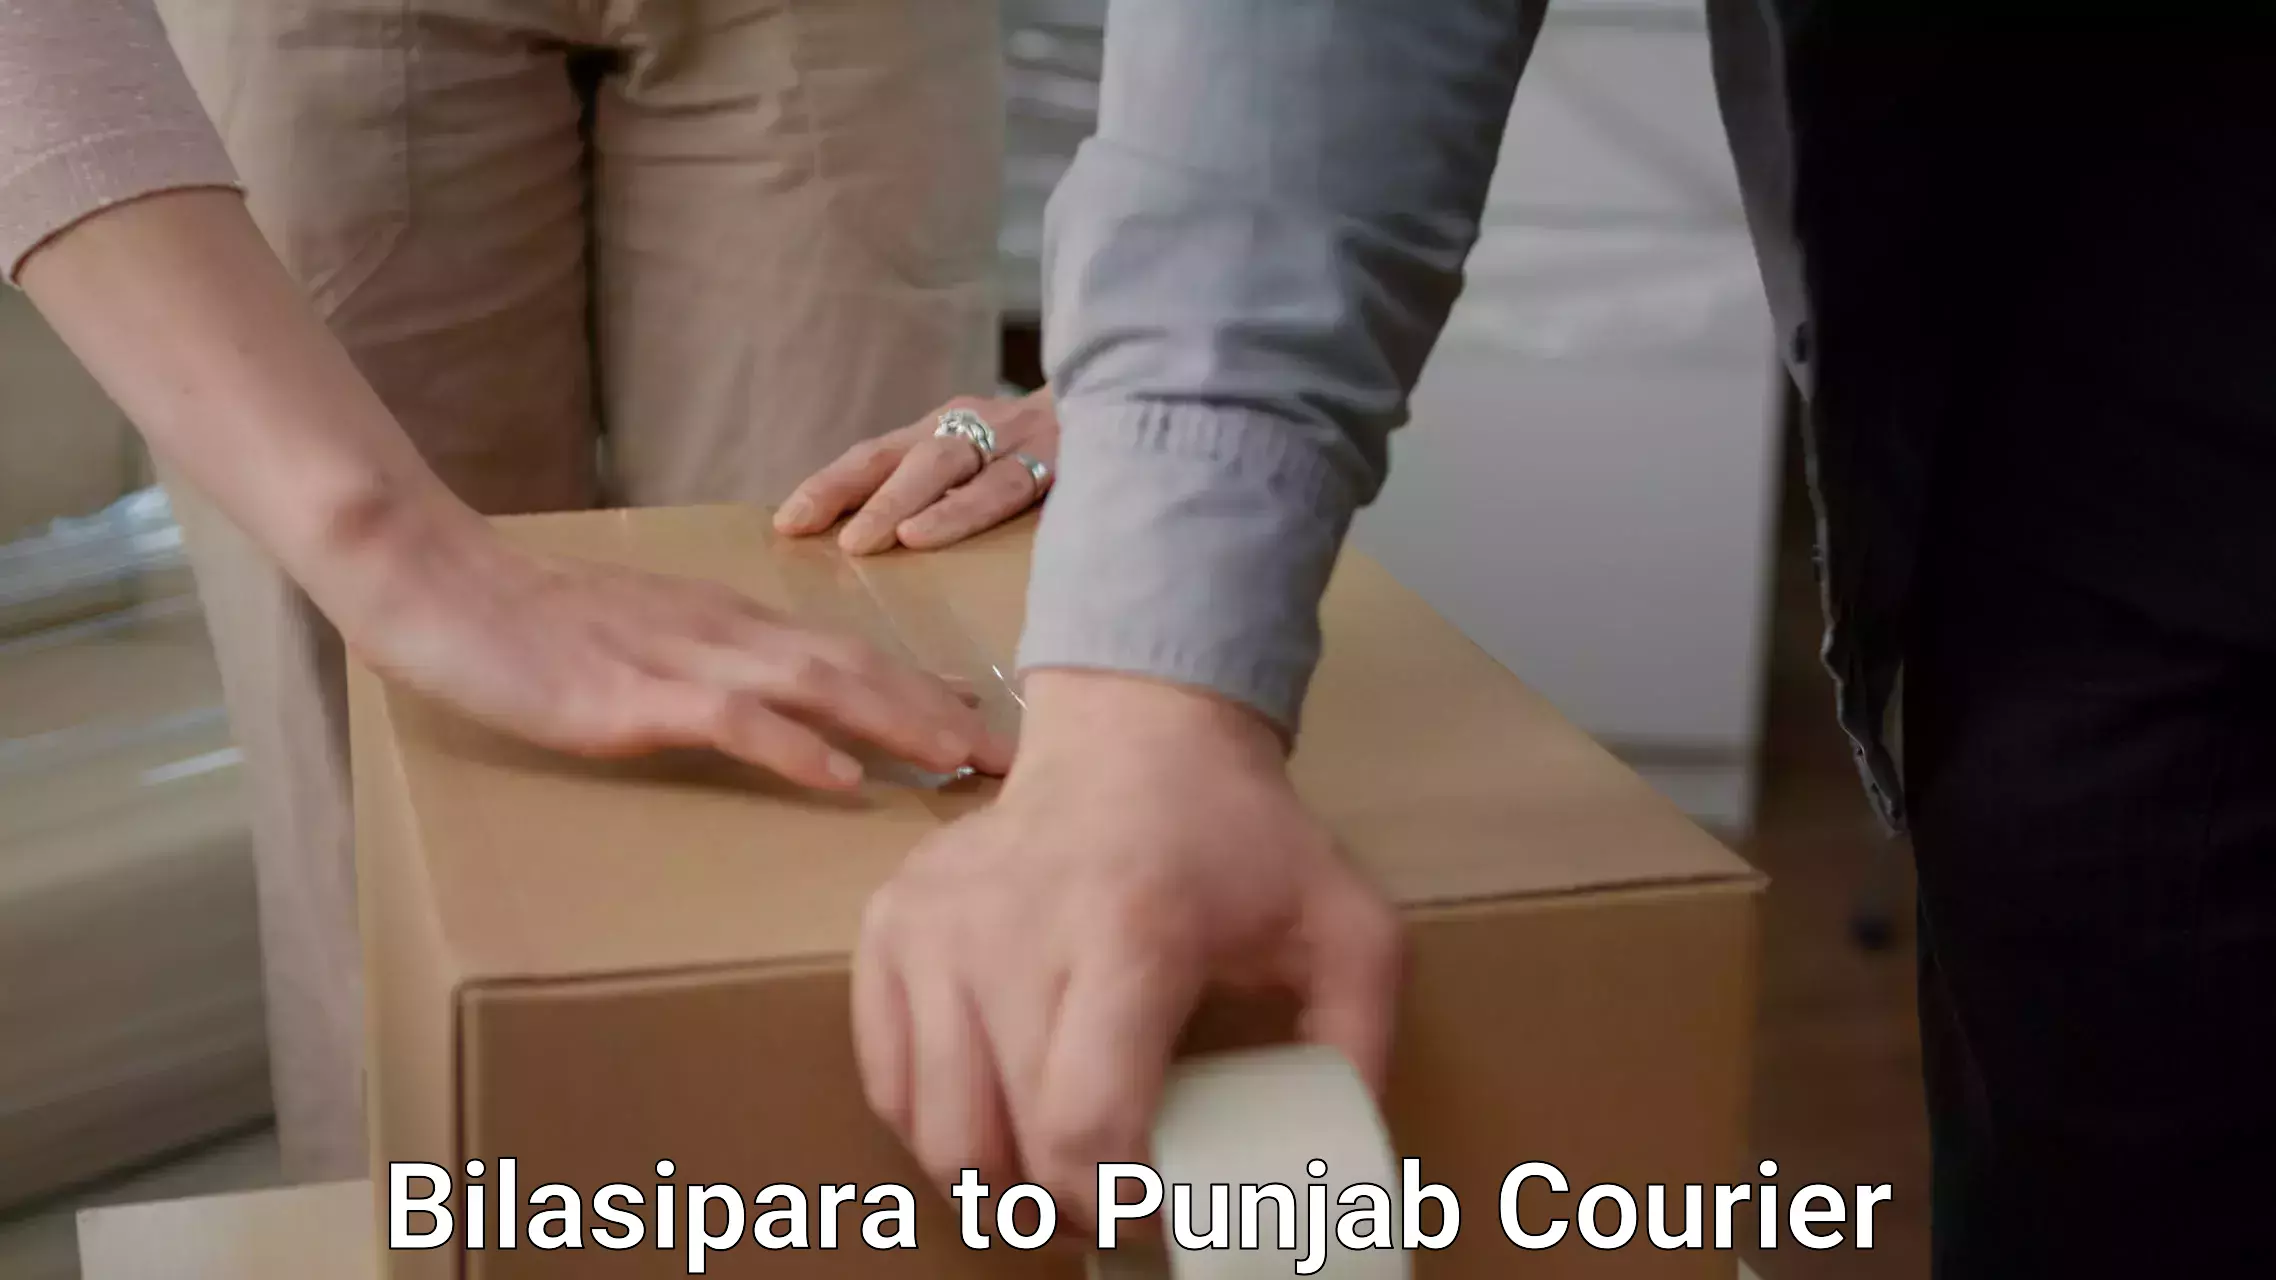 Furniture moving assistance Bilasipara to Punjab